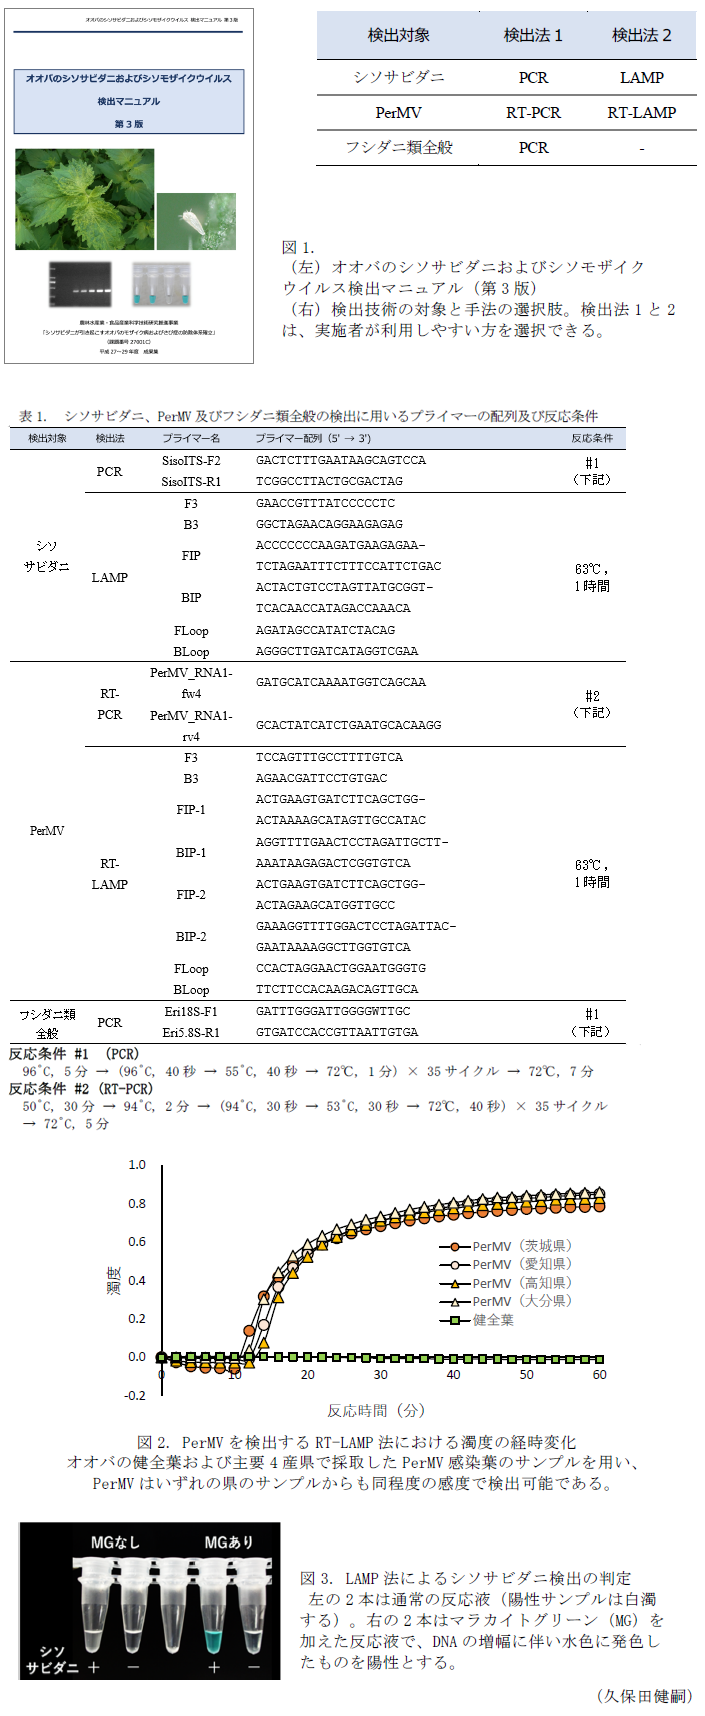 図1 オオバのシソサビダニおよびシソモザイクウイルス(PerMV)検出マニュアル(第2版),表1 シソサビダニ、PerMV及びフシダニ類全般の検出に用いるプライマーの配列及び反応条件,図2 PerMVを検出するRT-LAMP法における濁度の経時変化,図3 LAMP法によるシソサビダニ検出の判定